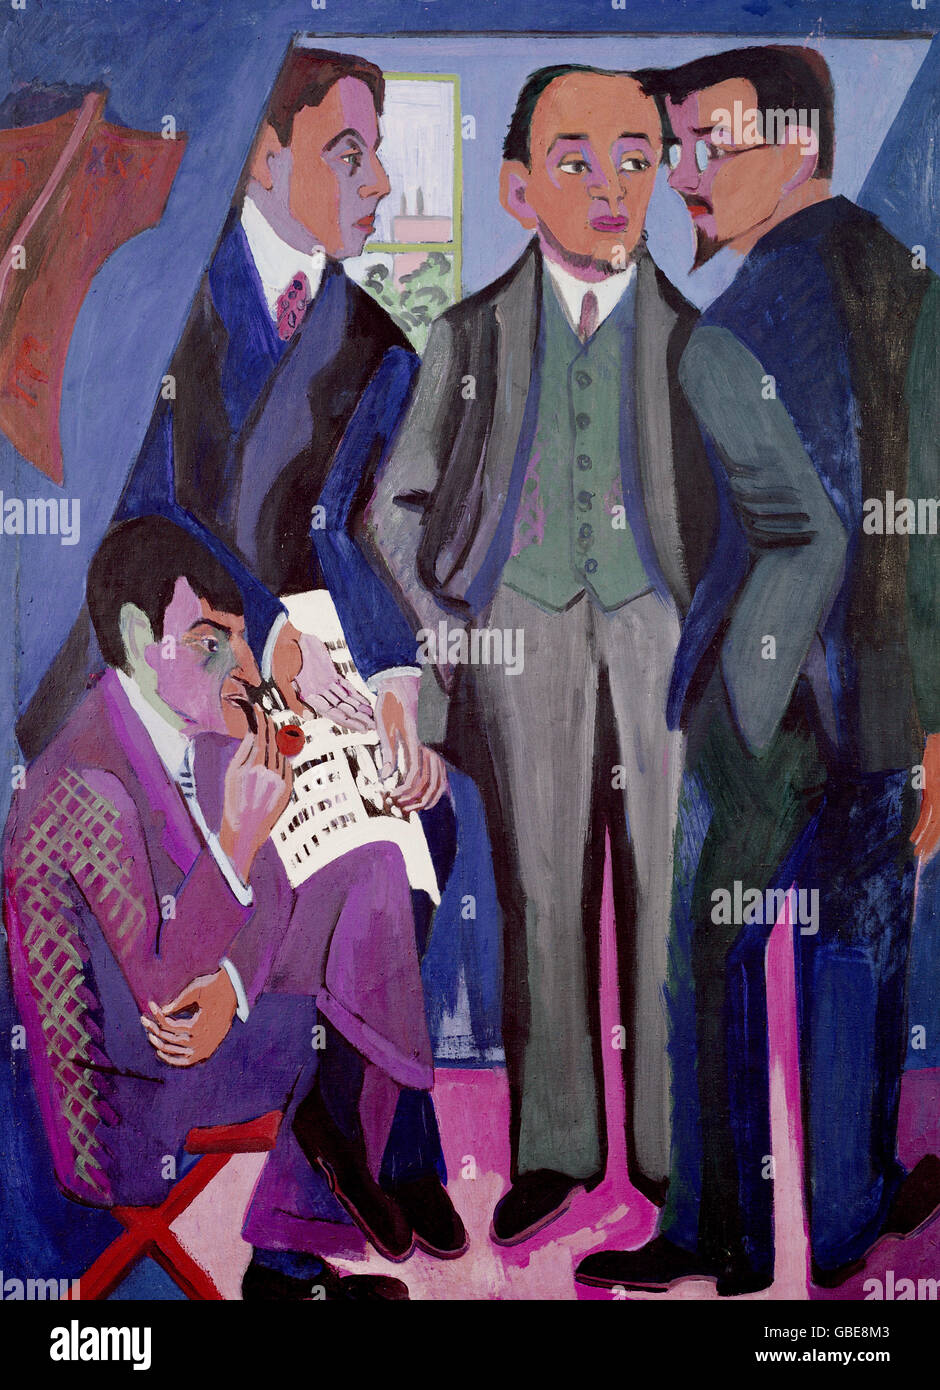 Bildende Kunst, Kirchner, Ernst Ludwig (1880-1938), Malerei, "Vier Maler der Künstlergemeinschaft Brücke" (vier Maler der Künstler Gruppe Brücke "), 1925, Museum Ludwig, Köln Stockfoto